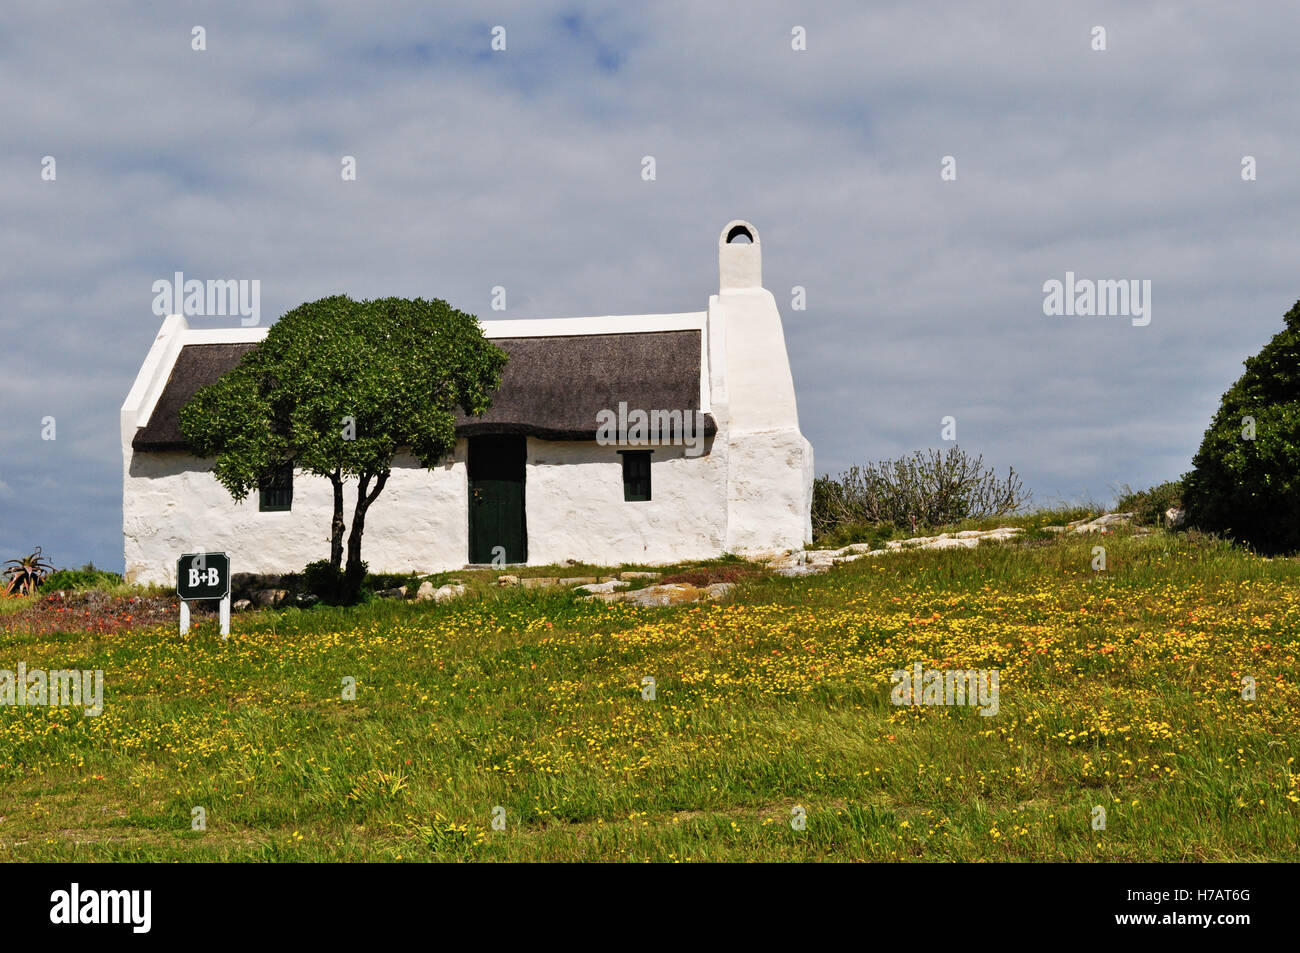 L'Afrique du Sud, sur la route de cap Agulhas : paysage idyllique à la campagne avec un white Bed and Breakfast, une pelouse verte et fleurs jaune Banque D'Images